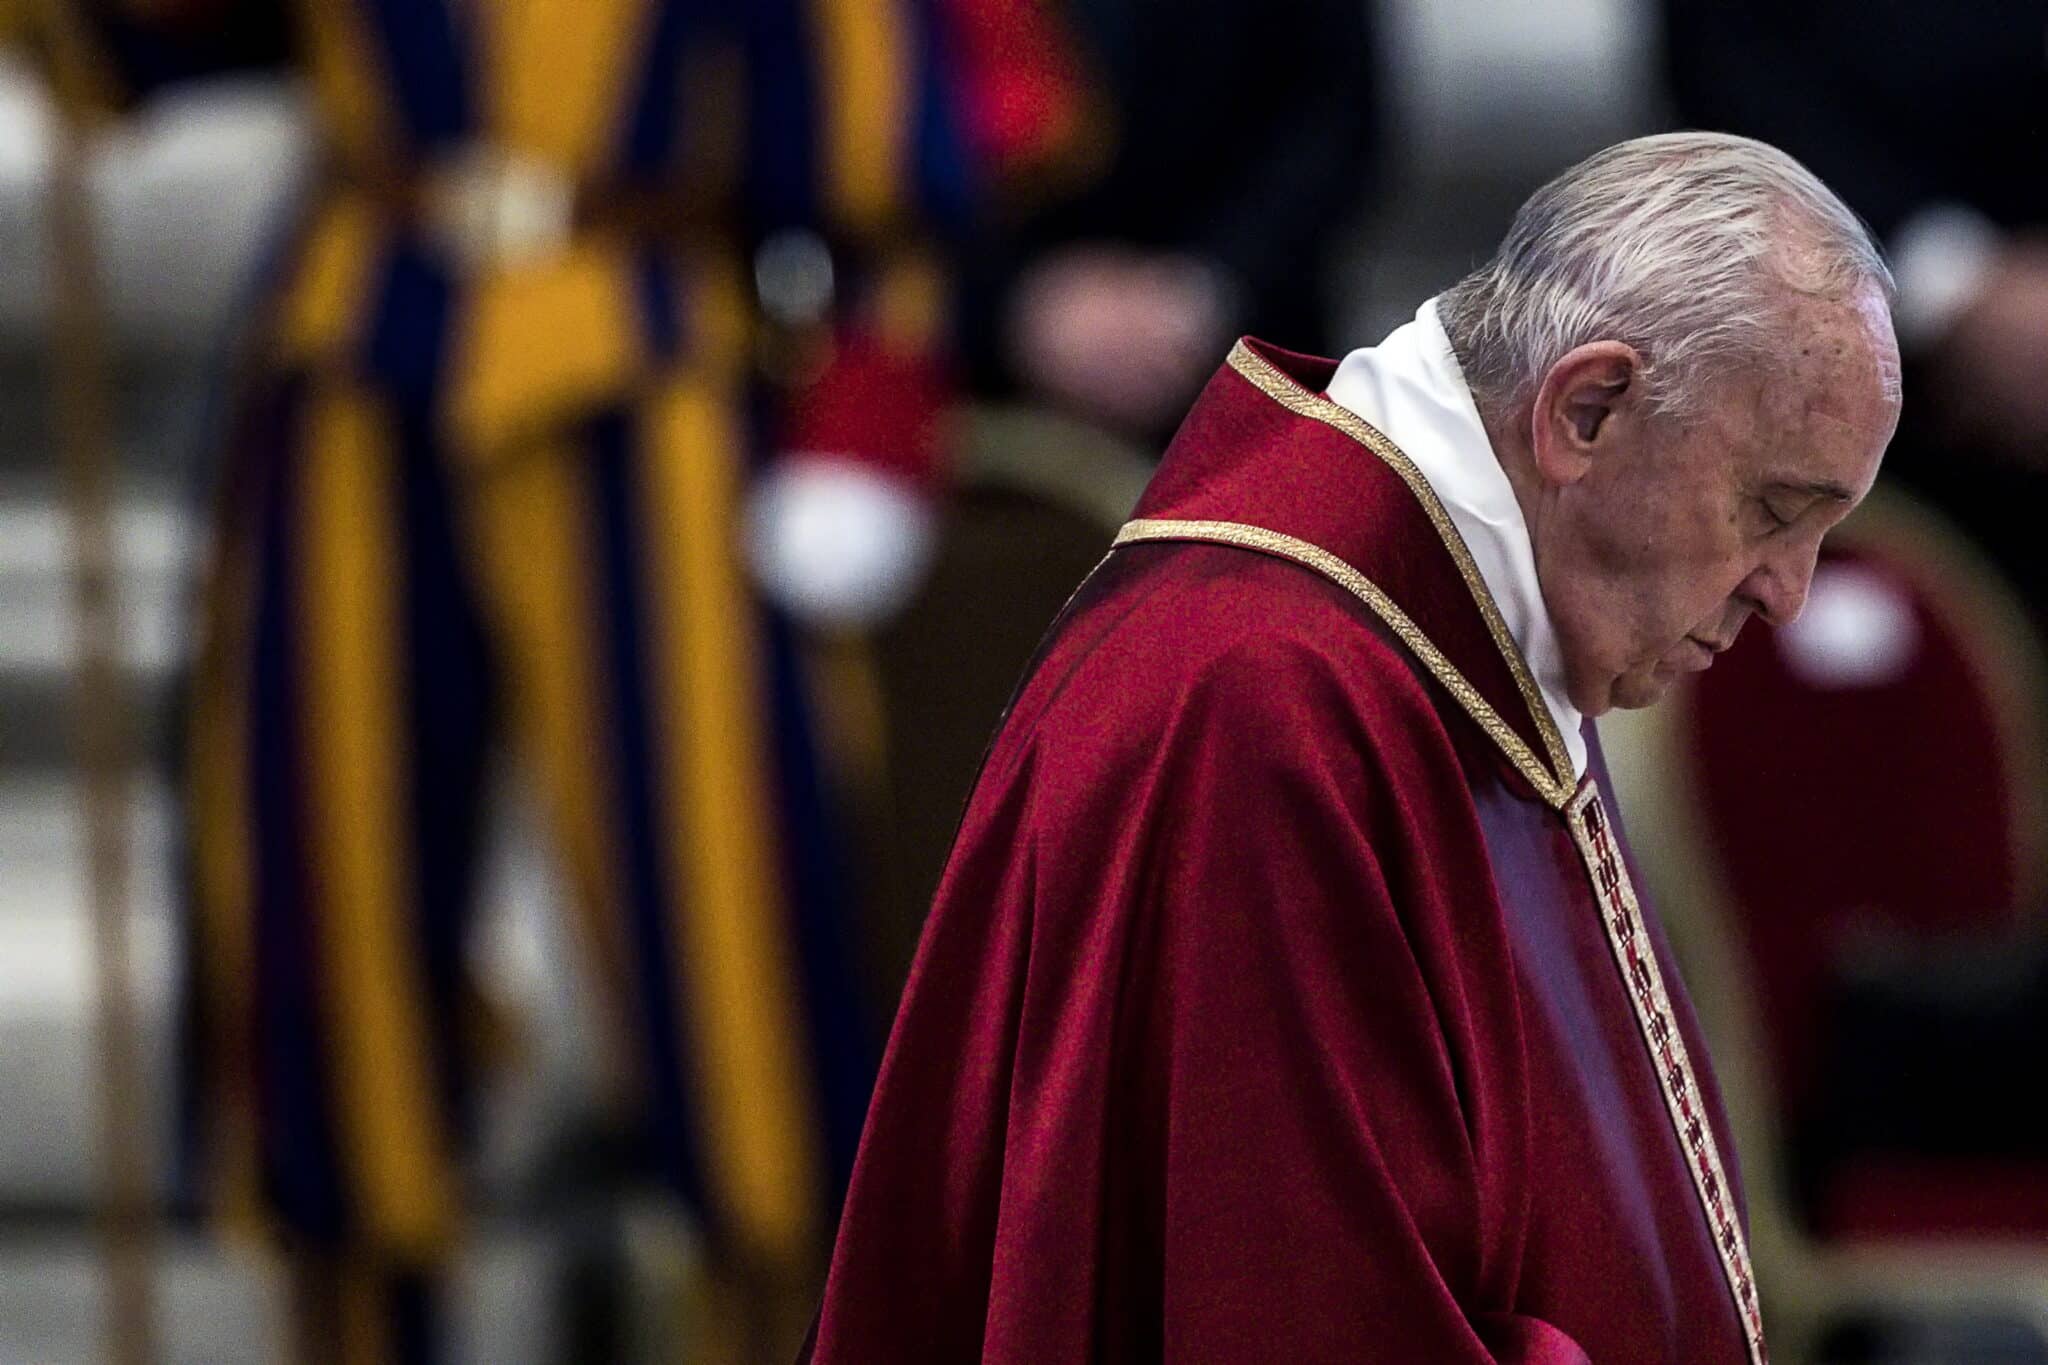 Los problemas de rodilla impiden al Papa postrarse en la basílica de San Pedro